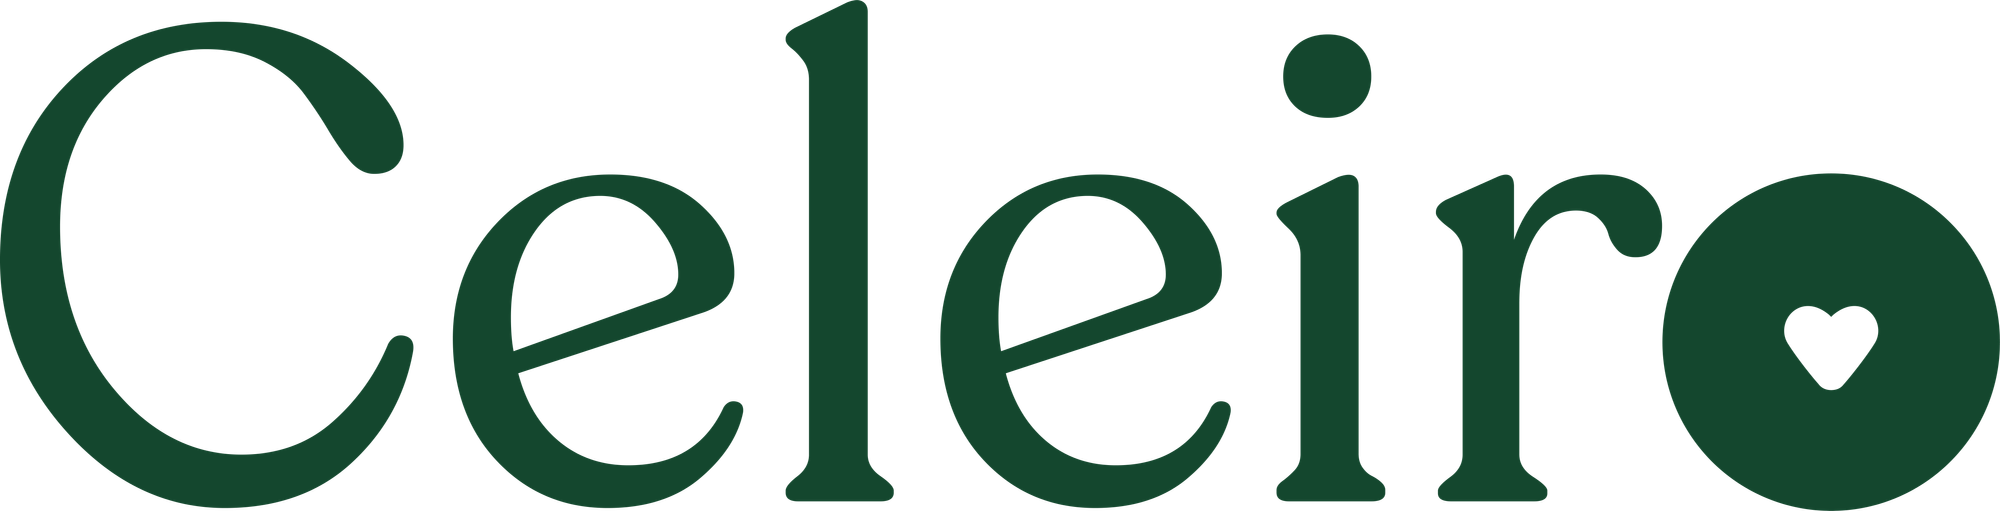 Logo_verde.png